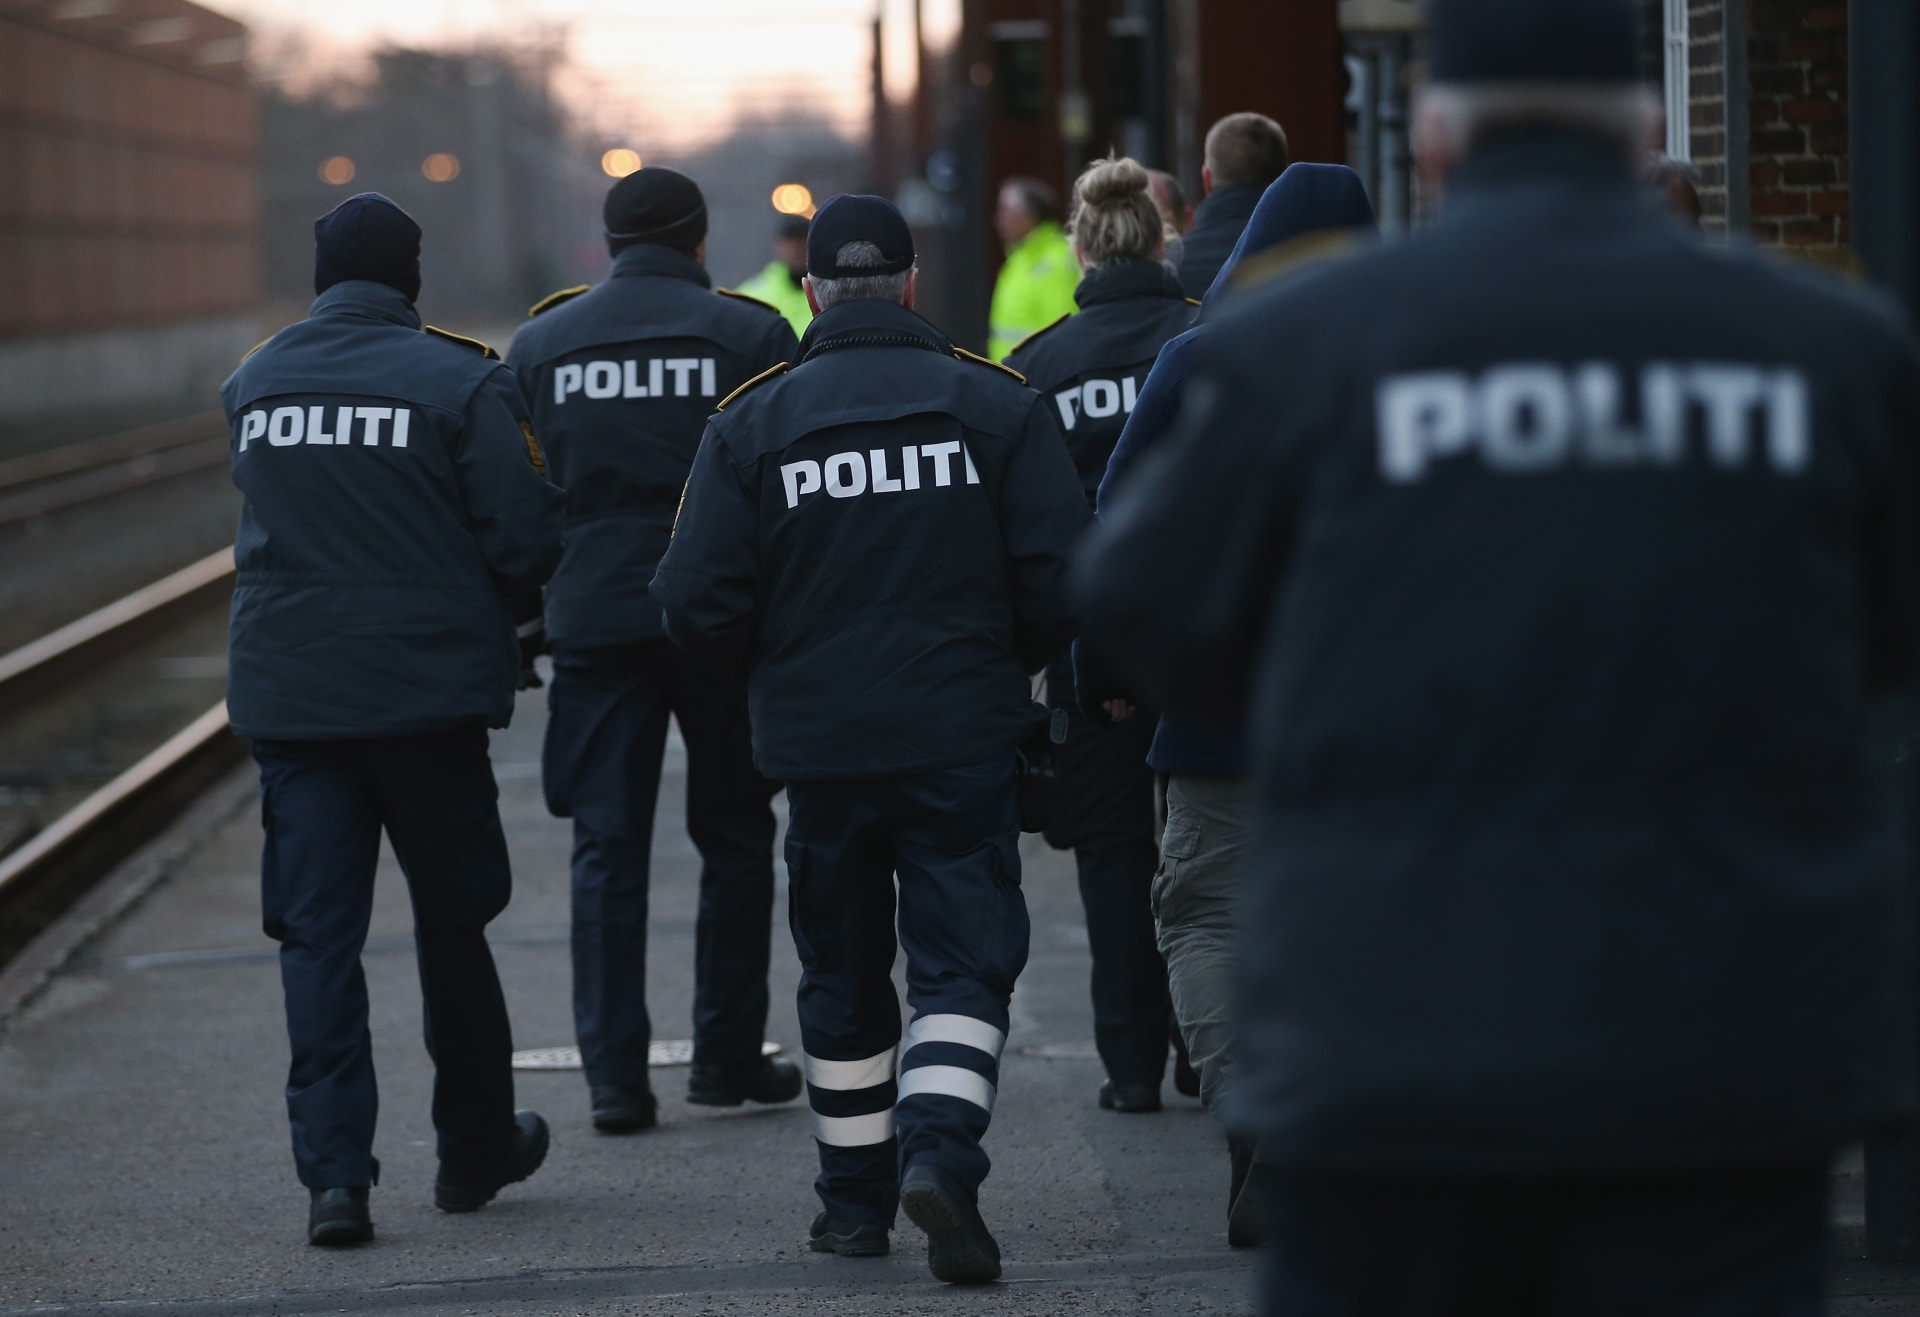 بالتعاون مع "أجهزة أجنبية".. الاستخبارات الدنماركية: اعتقال 4 أشخاص بتهم ترتبط بـ"الإرهاب"